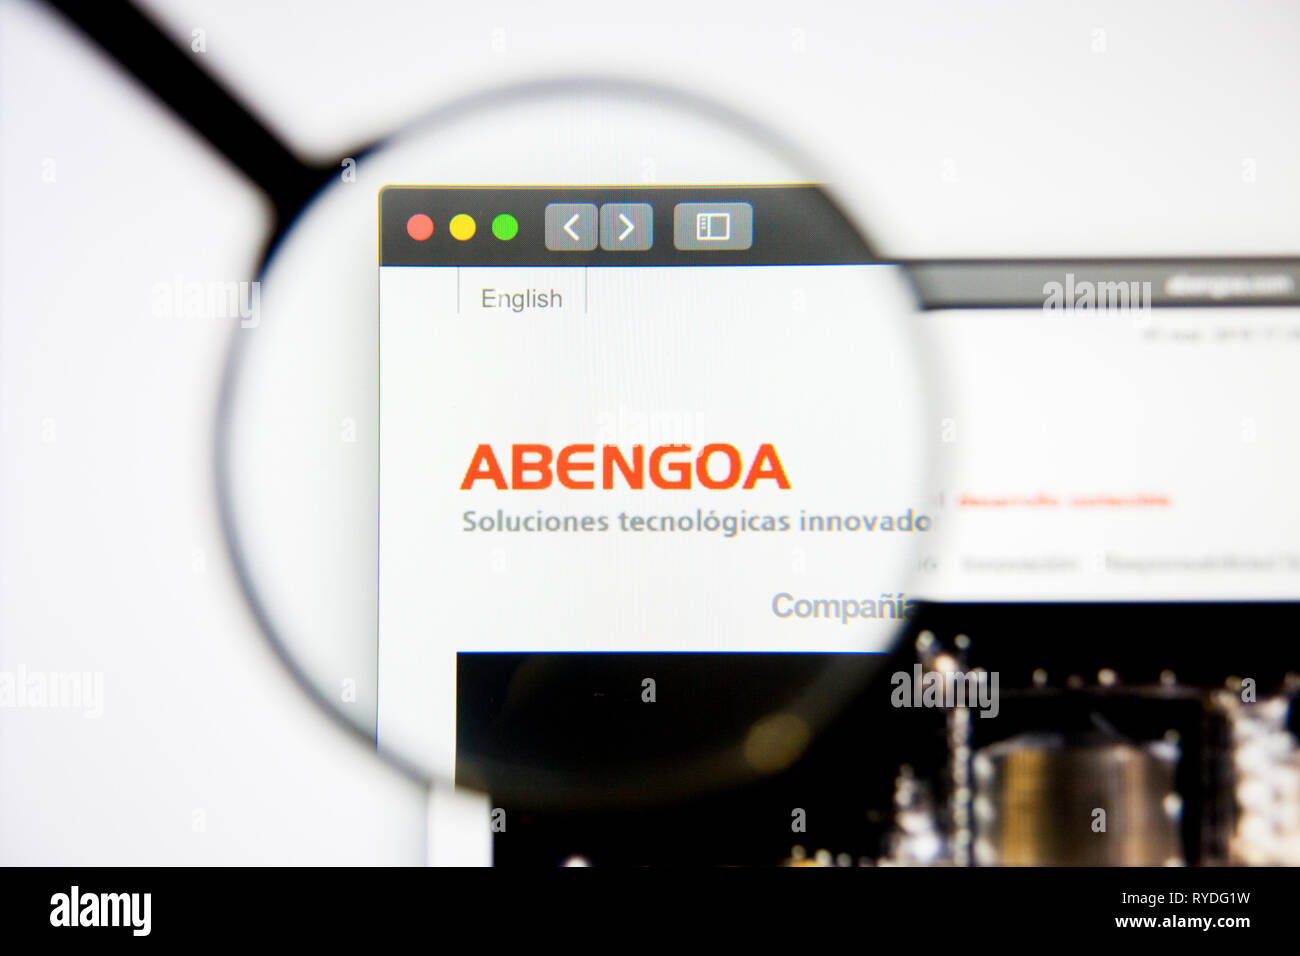 Los Angeles, Kalifornien, USA - 5. März 2019: Abengoa Homepage. Abengoa Logo sichtbar auf dem Display, Illustrative Editorial Stockfoto